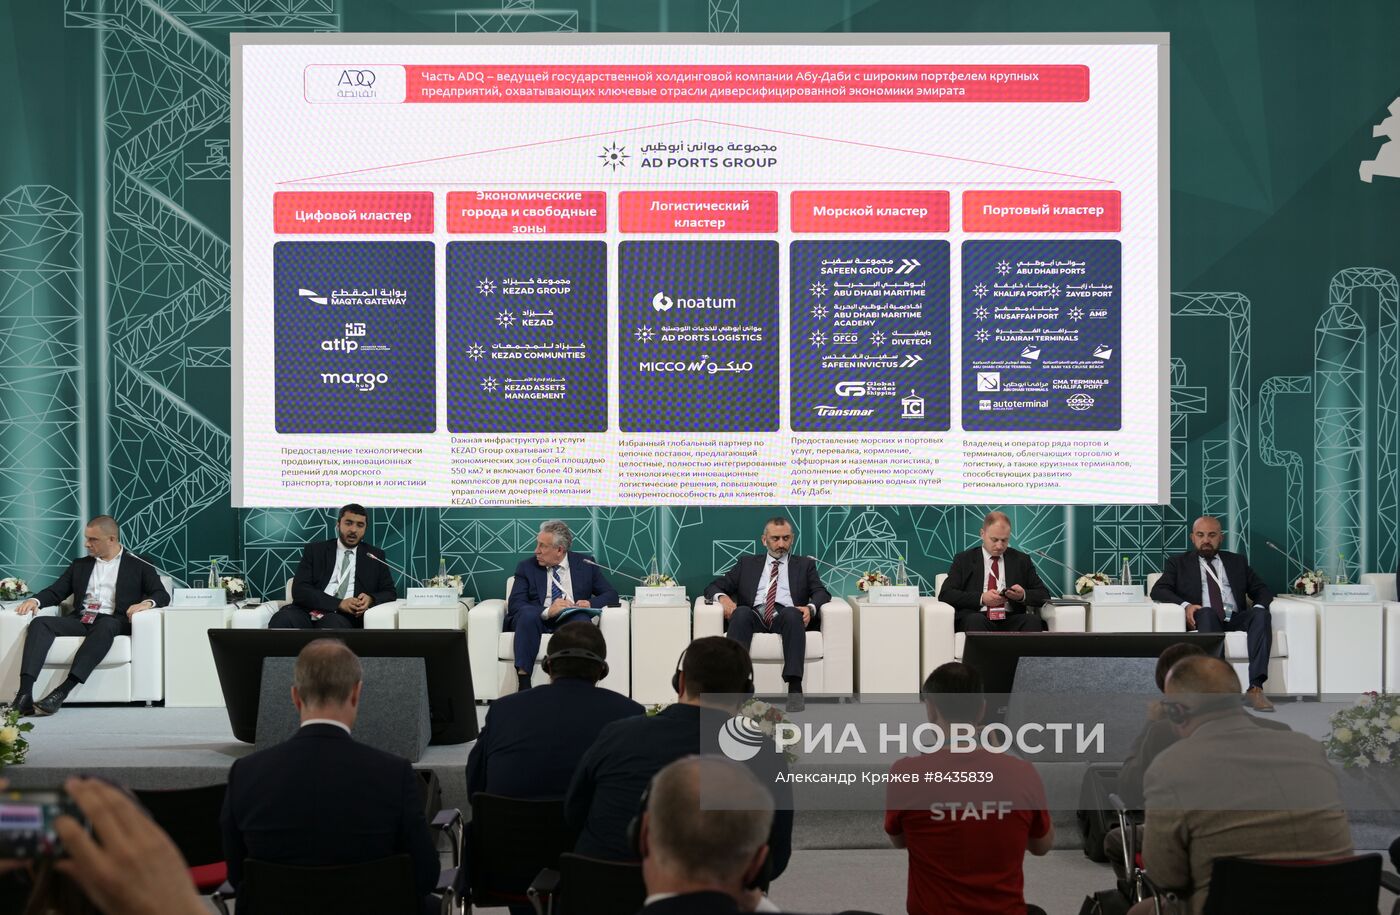 KAZANFORUM 2023. Возможности инфраструктуры ОАЭ для российских производственных компаний 